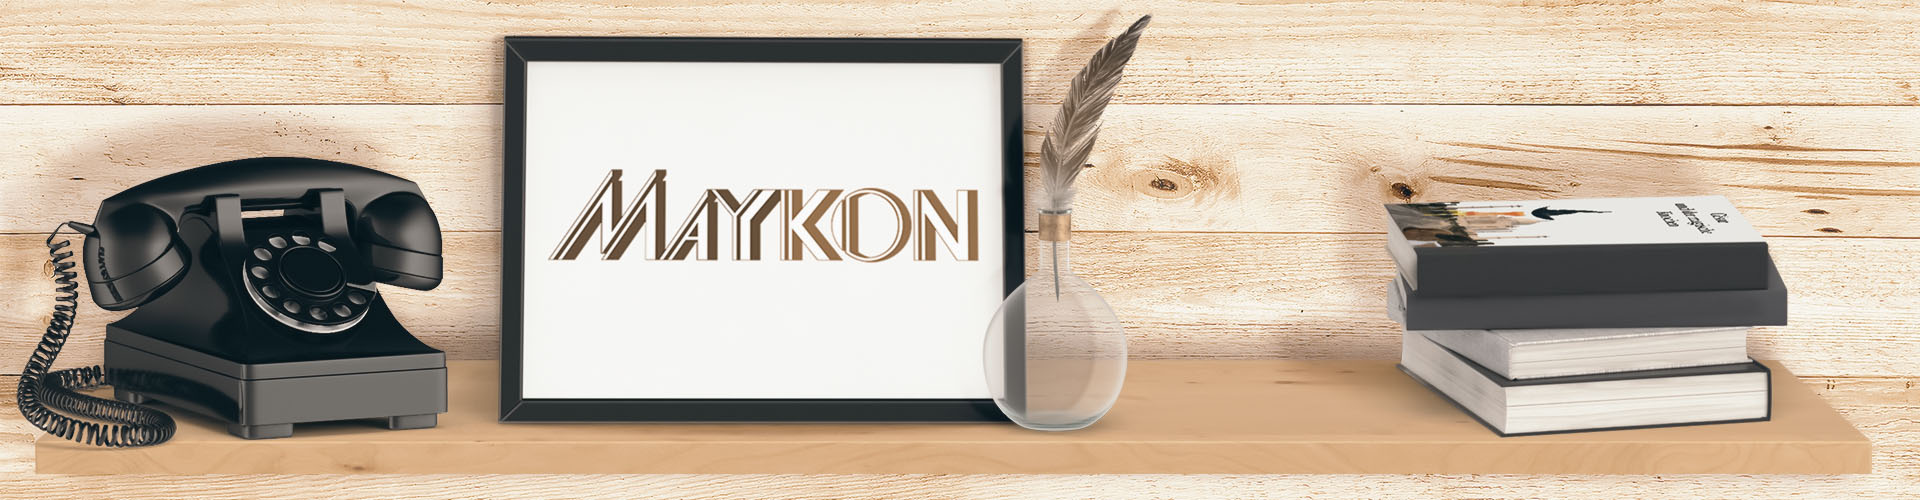 Maykon - Kontakt für Wünsche und Anregungen